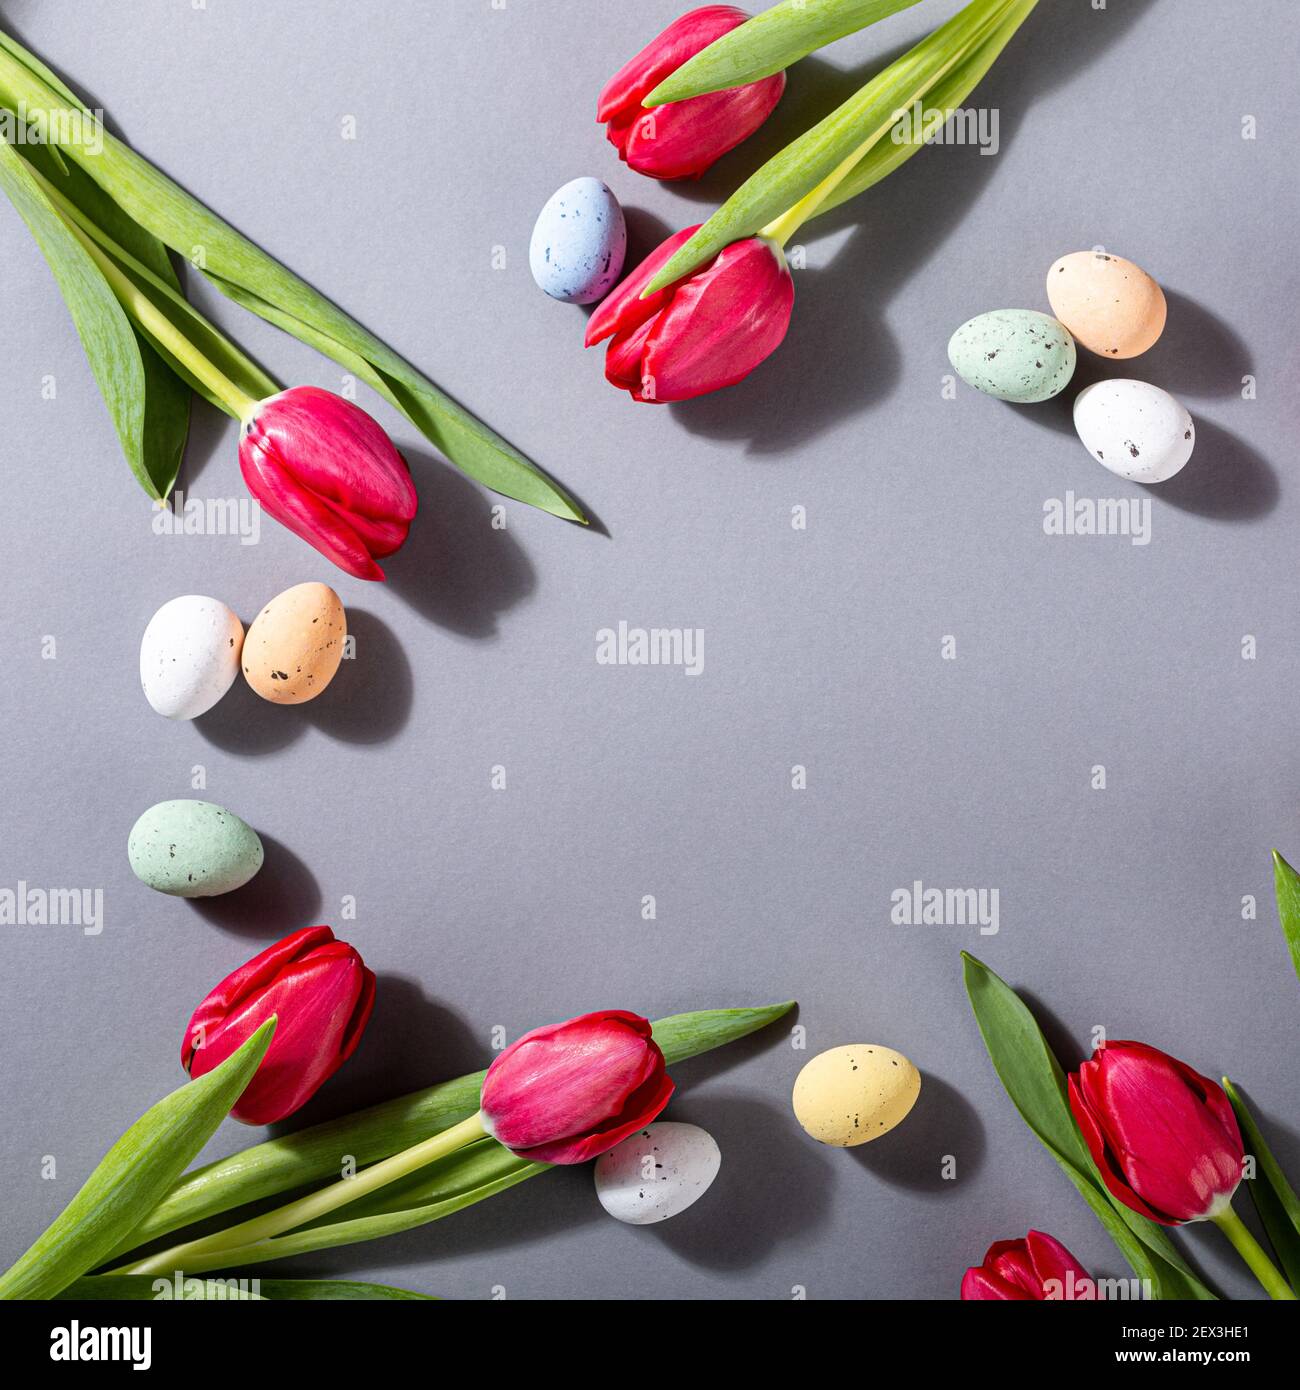 Tulipes roses sur fond gris Banque D'Images